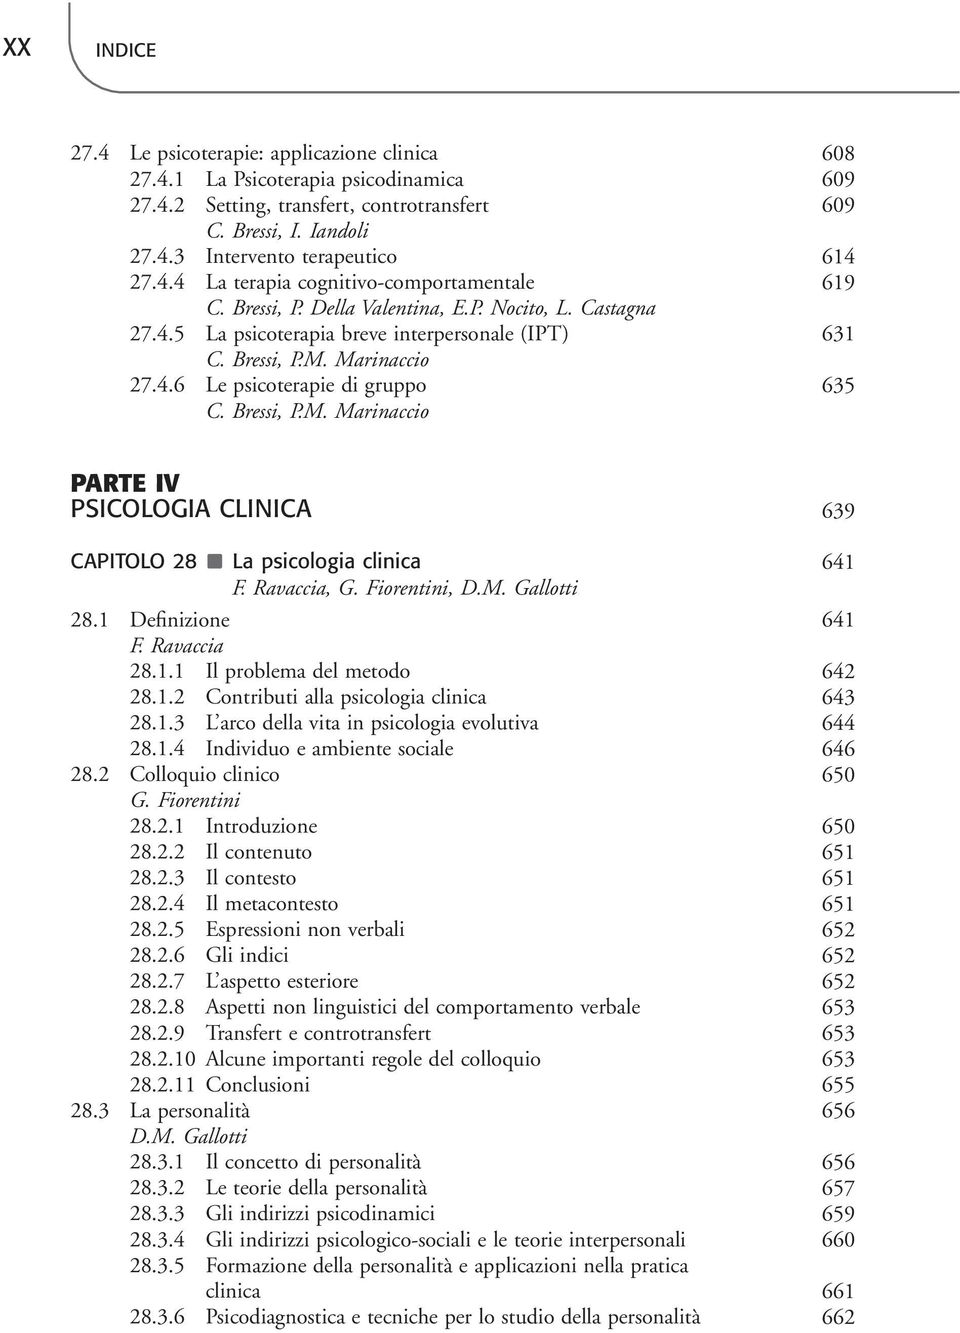 Bressi, P.M. Marinaccio PARTE IV PSICOLOGIA CLINICA 639 CAPITOLO 28 La psicologia clinica 641 F. Ravaccia, G. Fiorentini, D.M. Gallotti 28.1 Definizione 641 F. Ravaccia 28.1.1 Il problema del metodo 642 28.